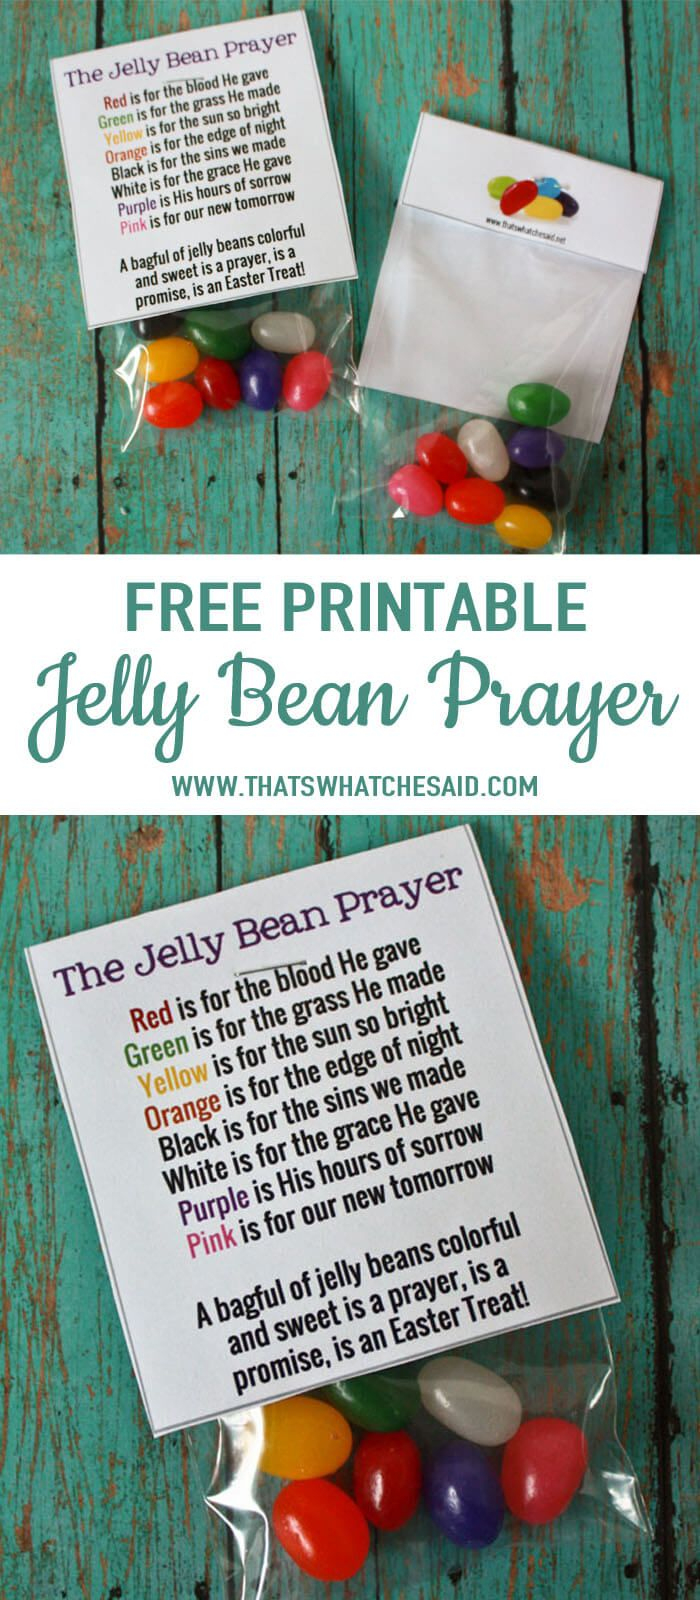 Free Jelly Bean Prayer Printable Treat Topper | Easter | Pinterest - Free Printable Easter Sermons